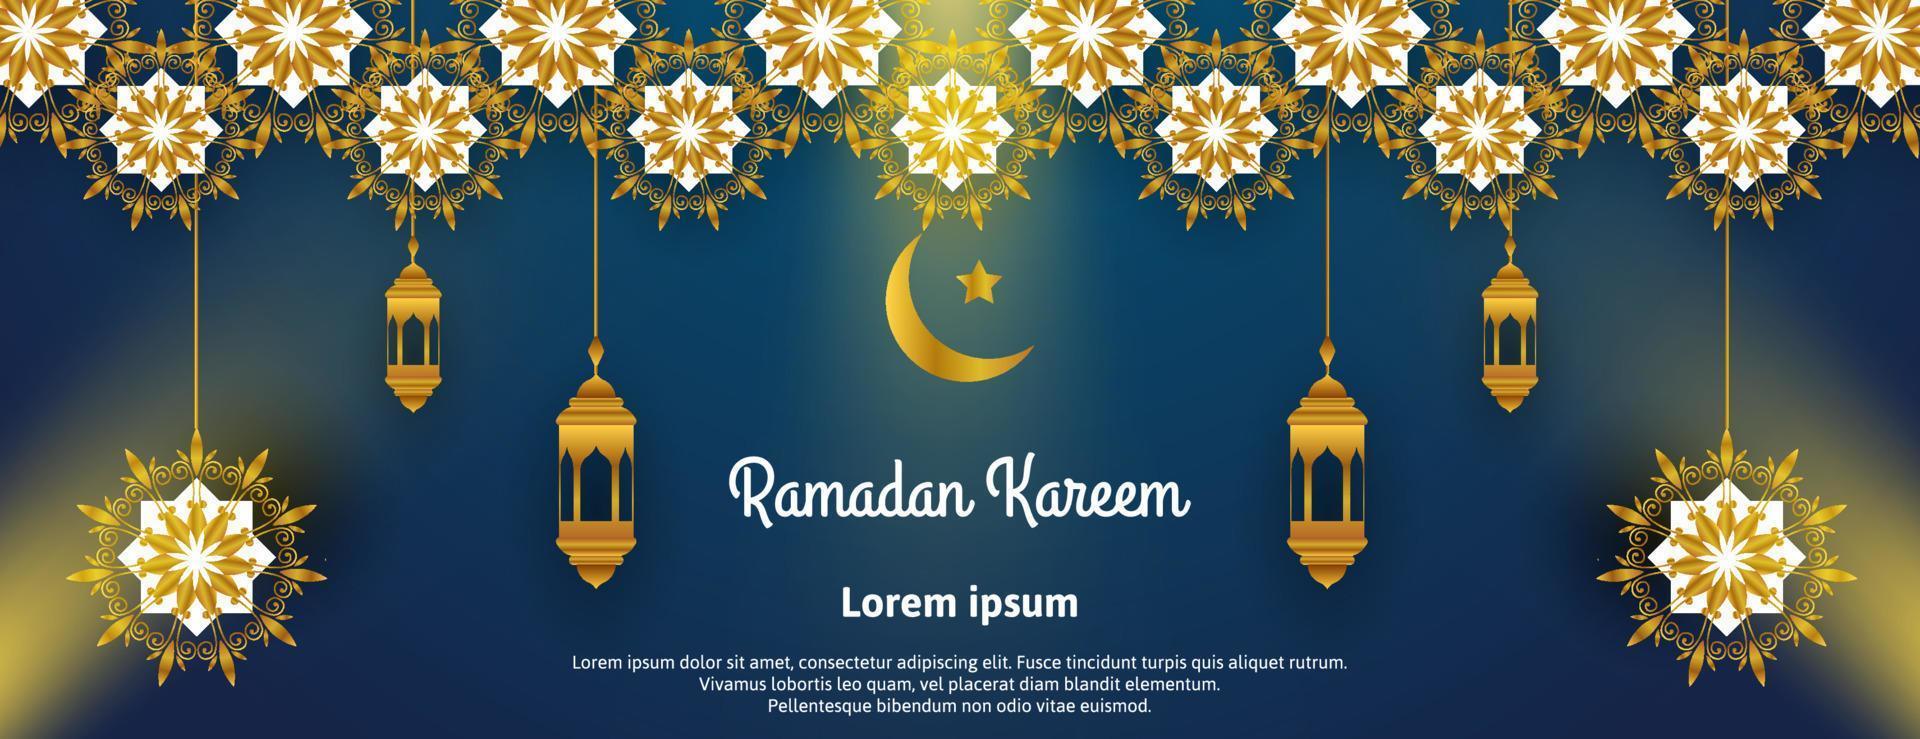 goldenes ramadan kareem bannerdesign mit laterne, licht und mandala auf blauem hintergrund vektor